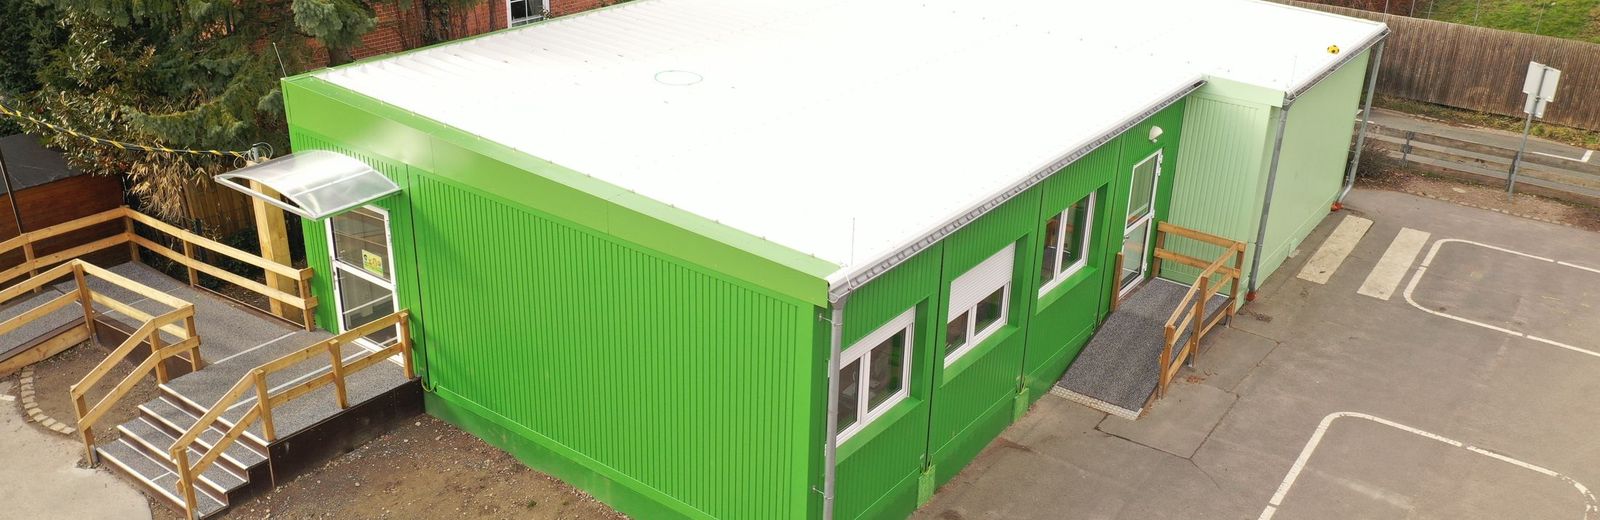 Grüne Grundschul-Container für die Stadt Seelze